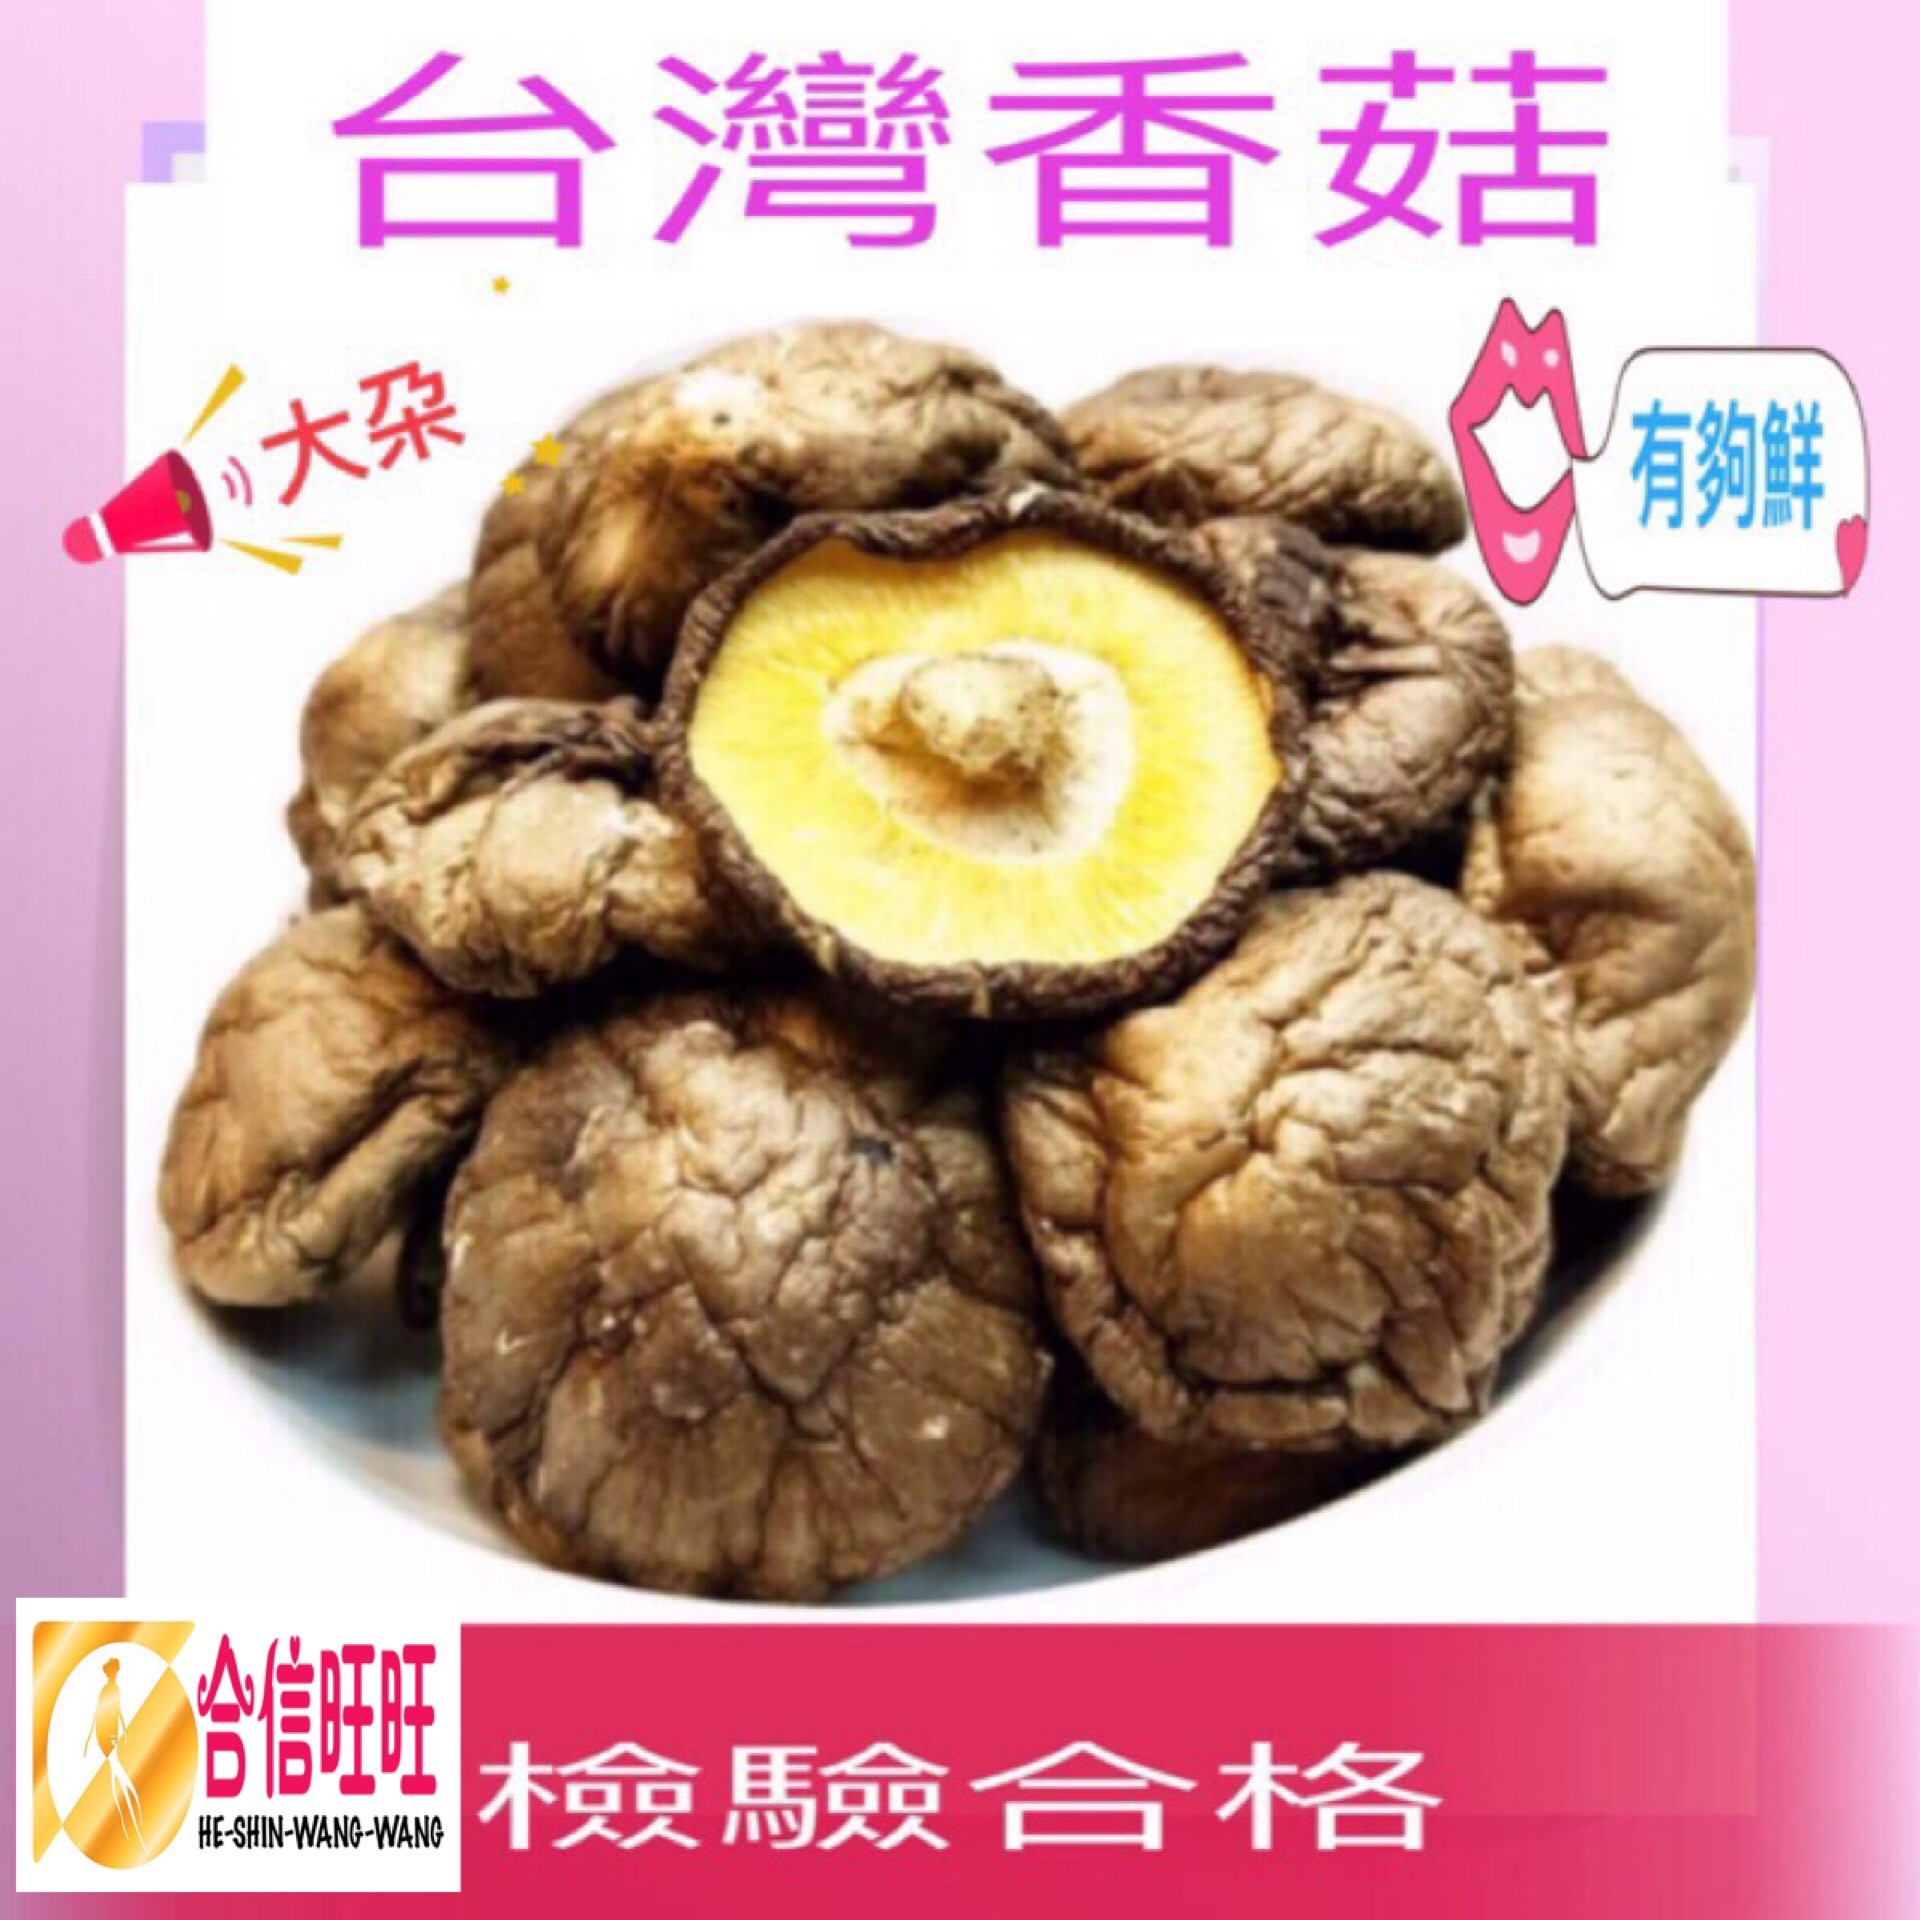 【台灣香菇 】(大朵)300克╱滋味鮮美 肉質鮮嫩